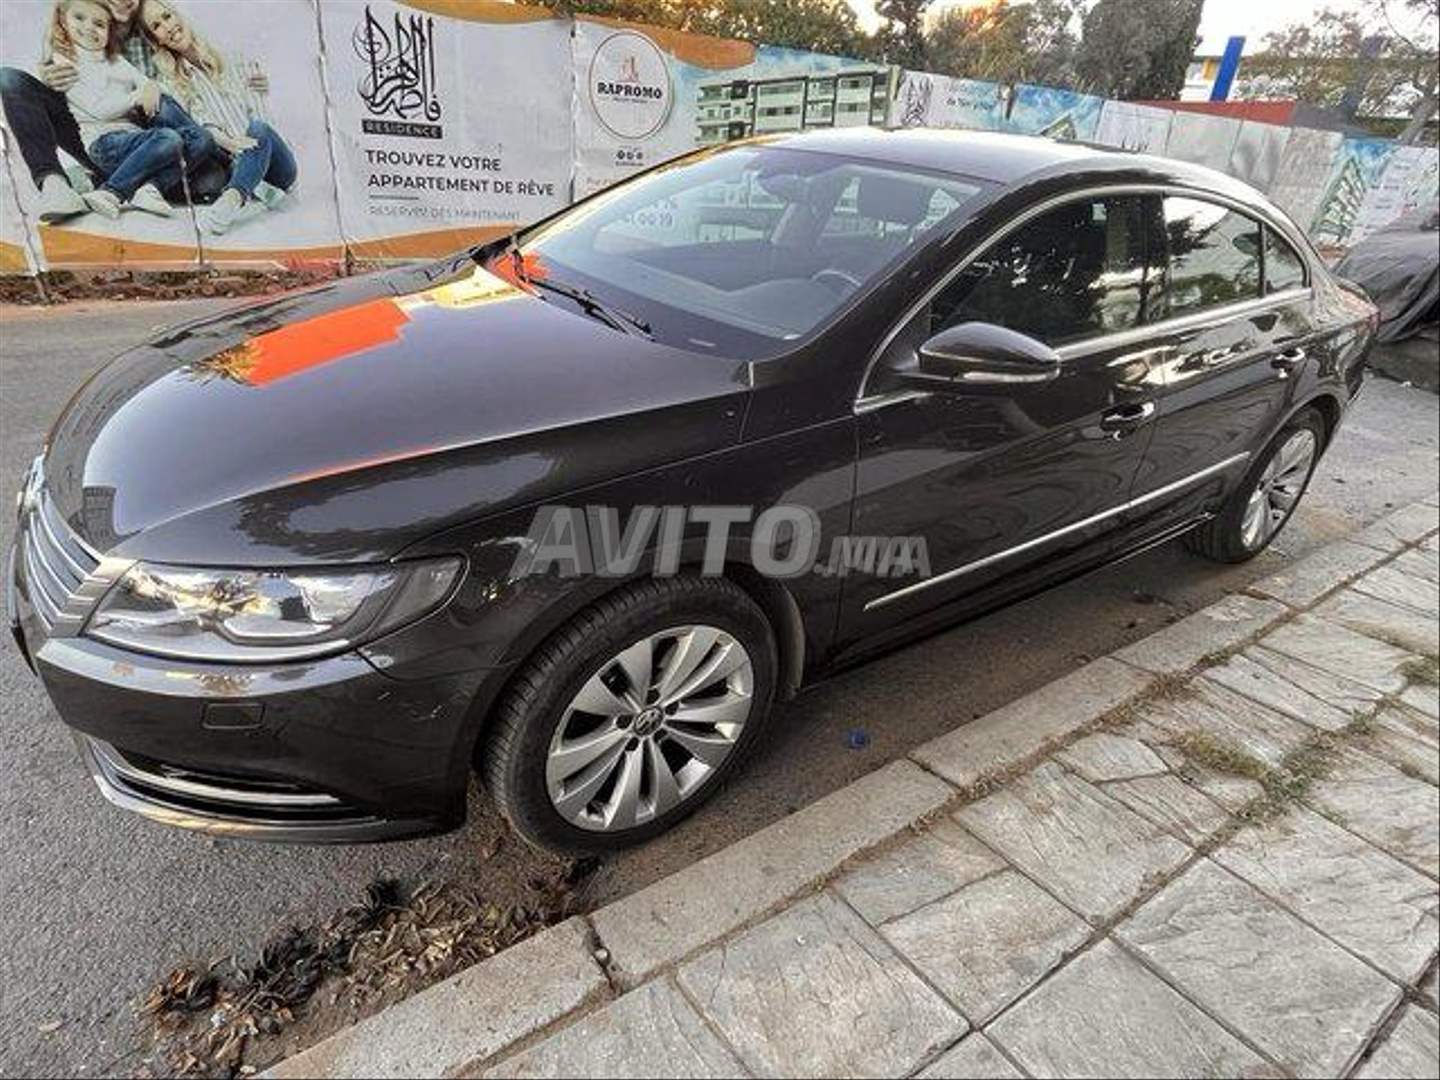 Volkswagen Passat CC Diesel Kénitra pas cher à vendre, Avito Maroc